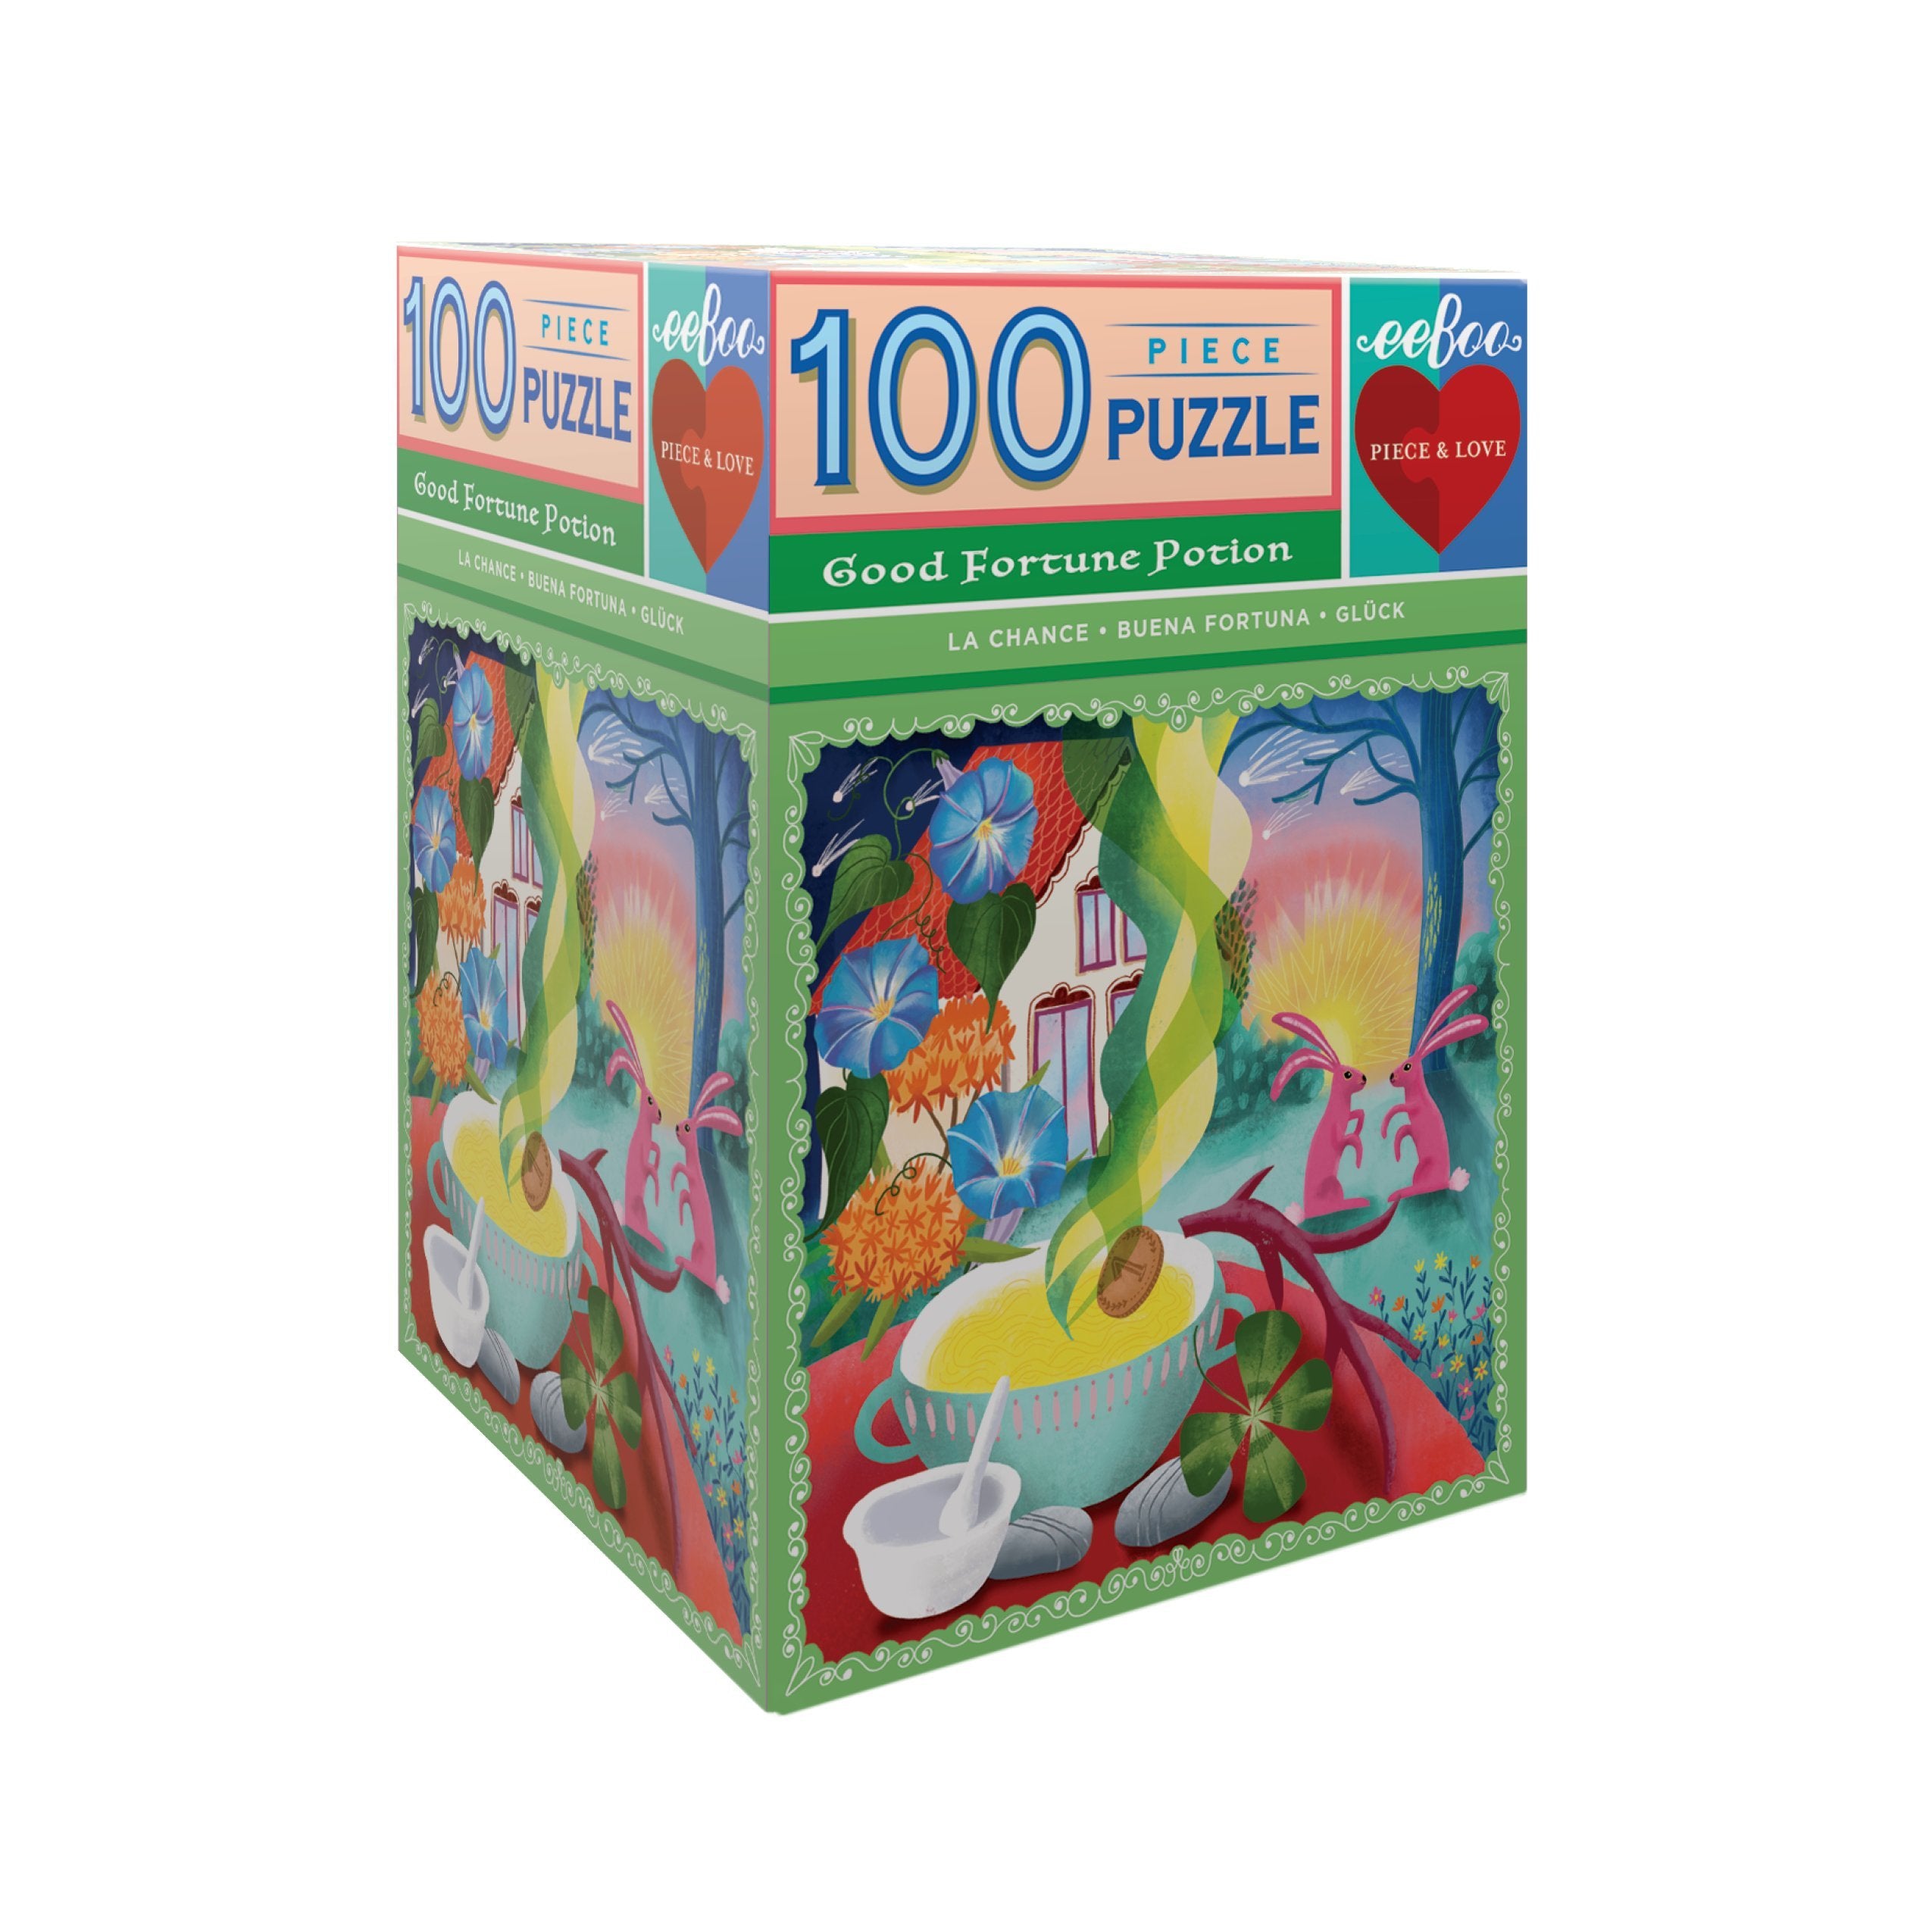 Good Fortune Potion 100 Piece Puzzle    